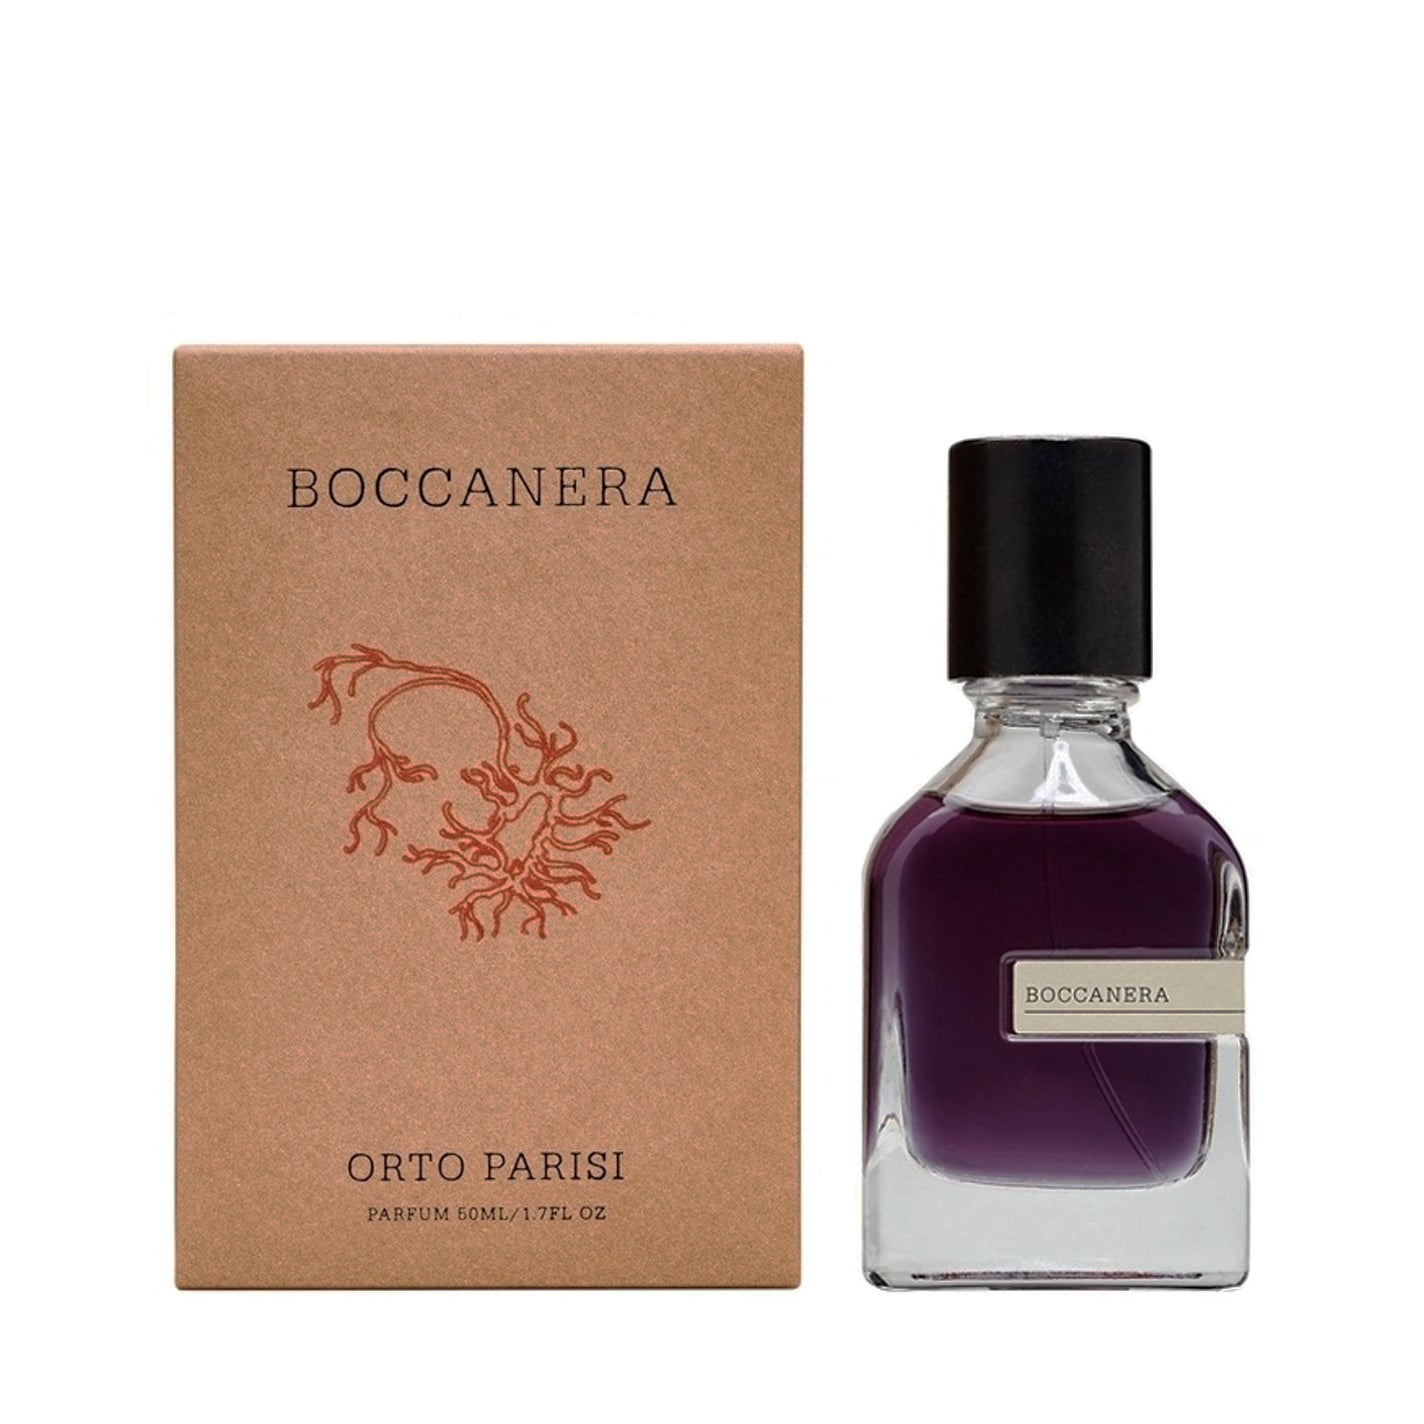 Orto Parisi Boccanera Parfum: Official Stockist